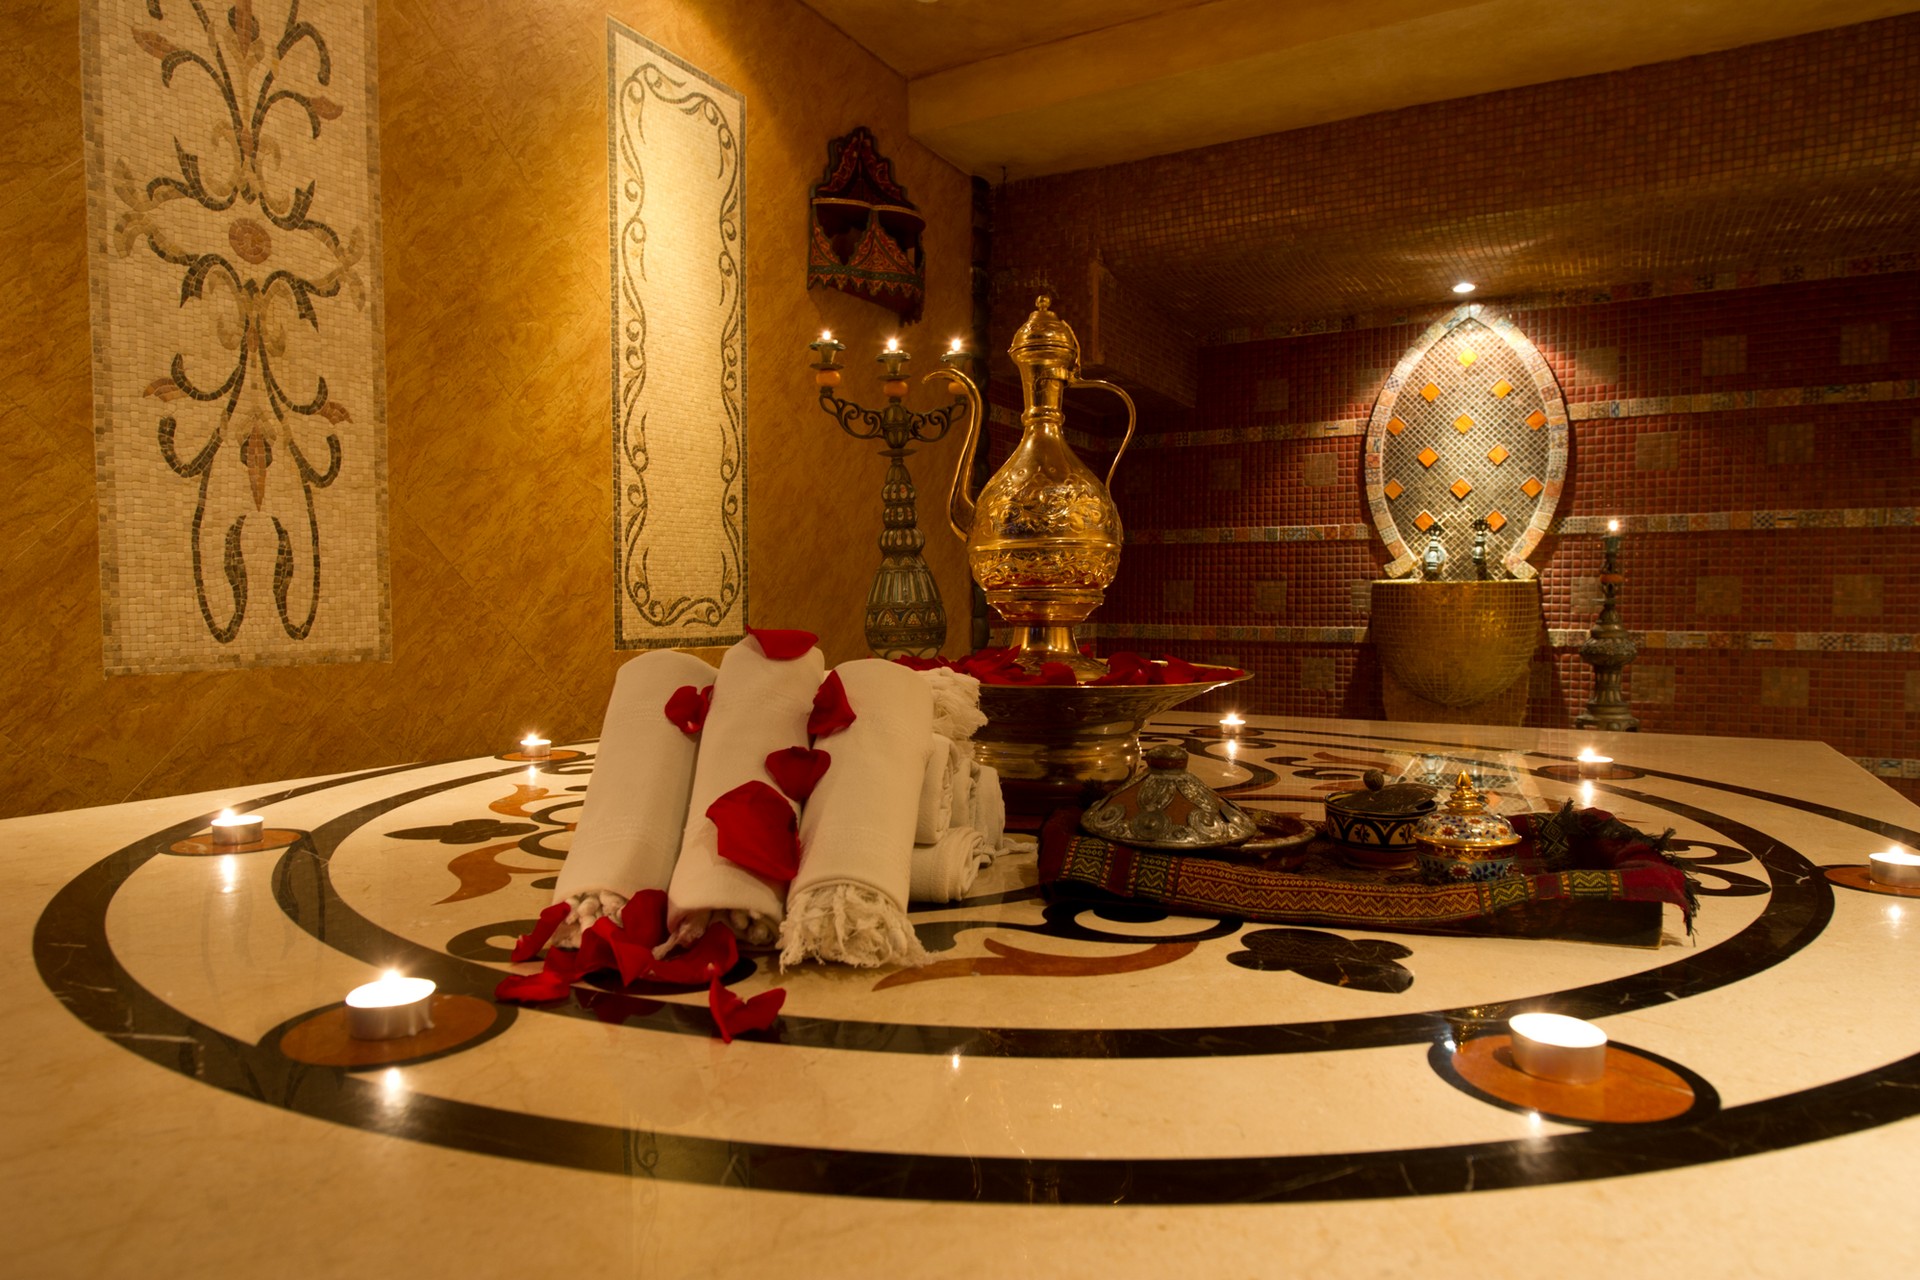 Best Massage Center in Dubai